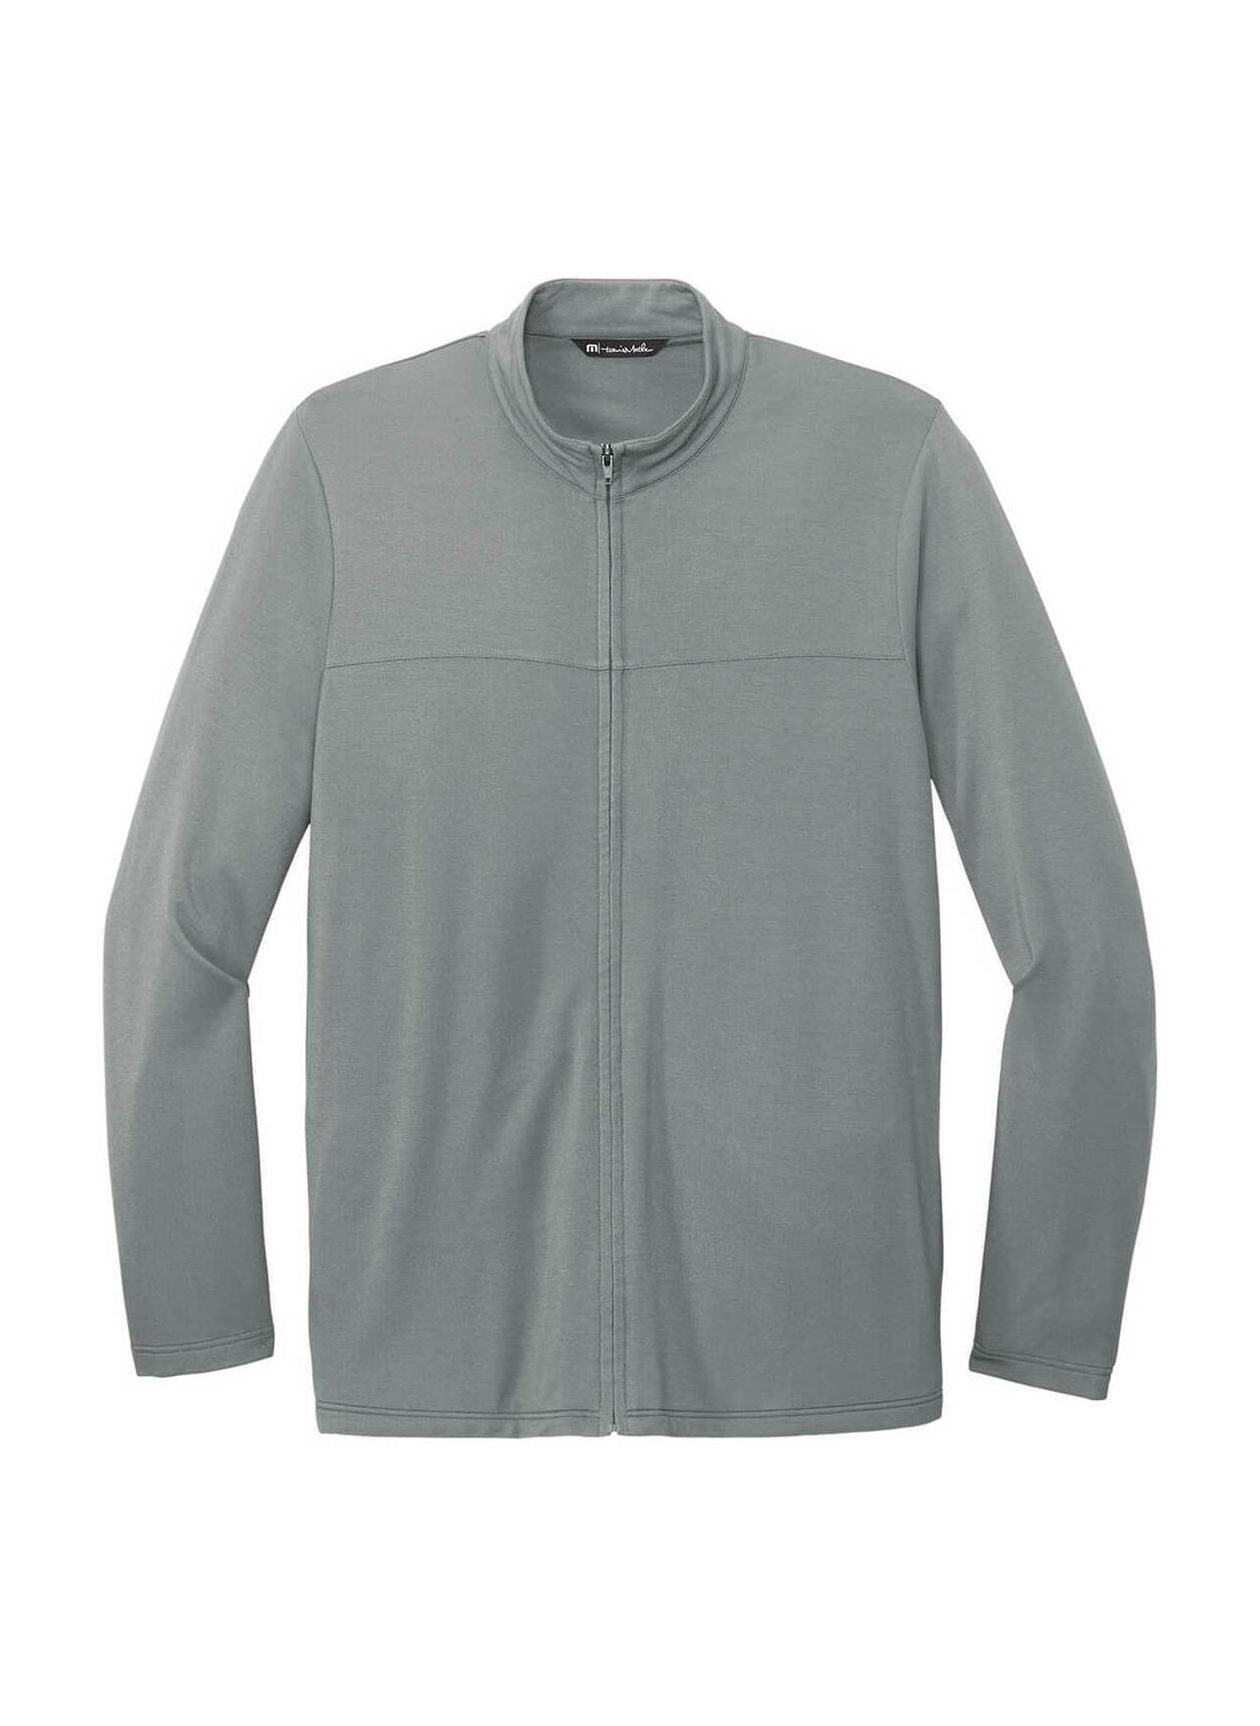 TravisMathew Men's Quiet Shade Grey Newport Fleece Jacket